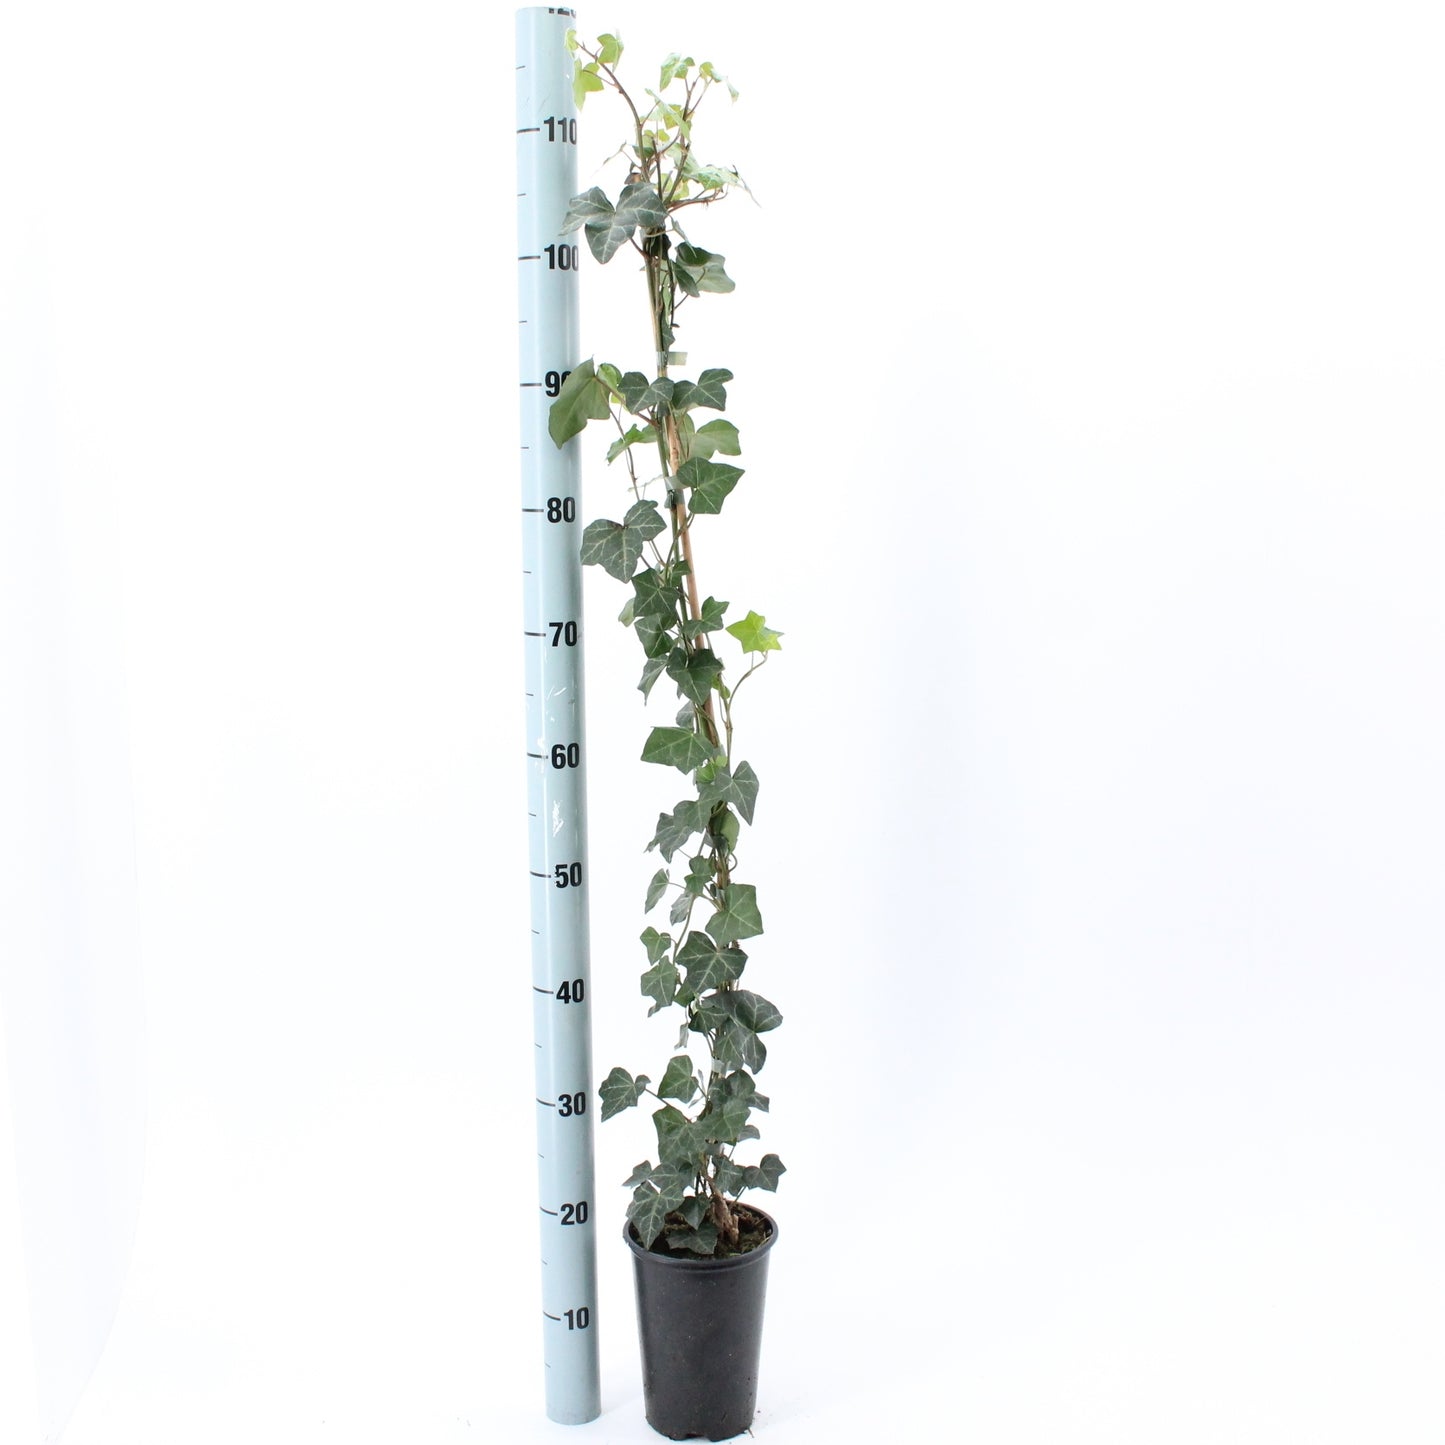 10 x Efeu 100-140 cm Hedera Hibernica 10 immergrüne echte Kletterpflanzen für eine 3 Meter 100% Sichtschutz Hecke Blickdicht Kletterpflanzen